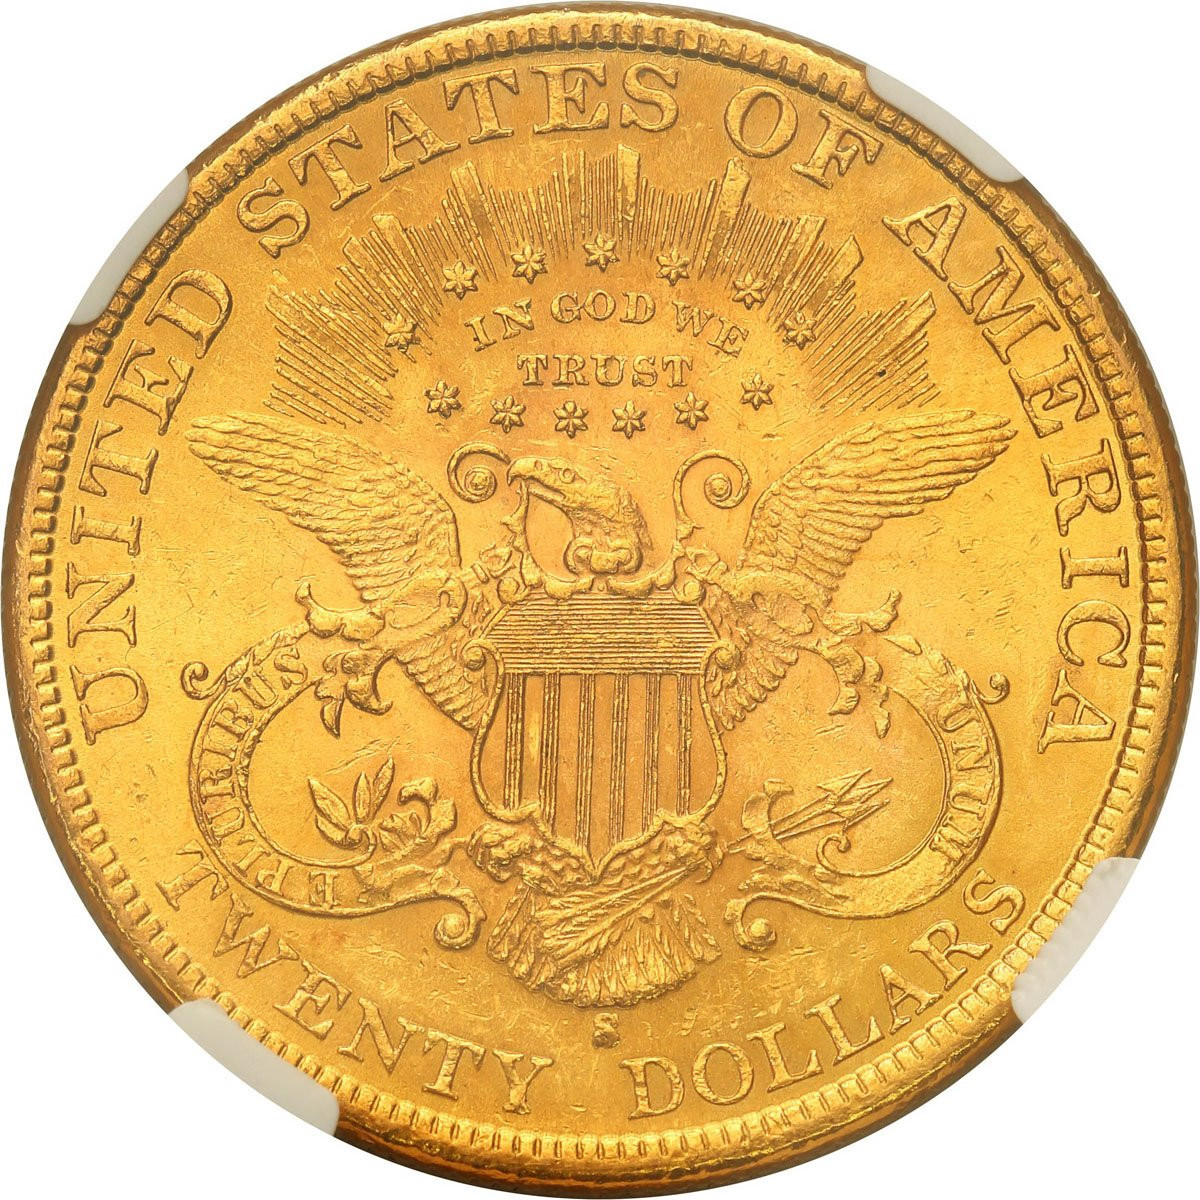 Amerykańskie złote 20 dolarów Liberty 1899 S - San Francisco NGC MS62